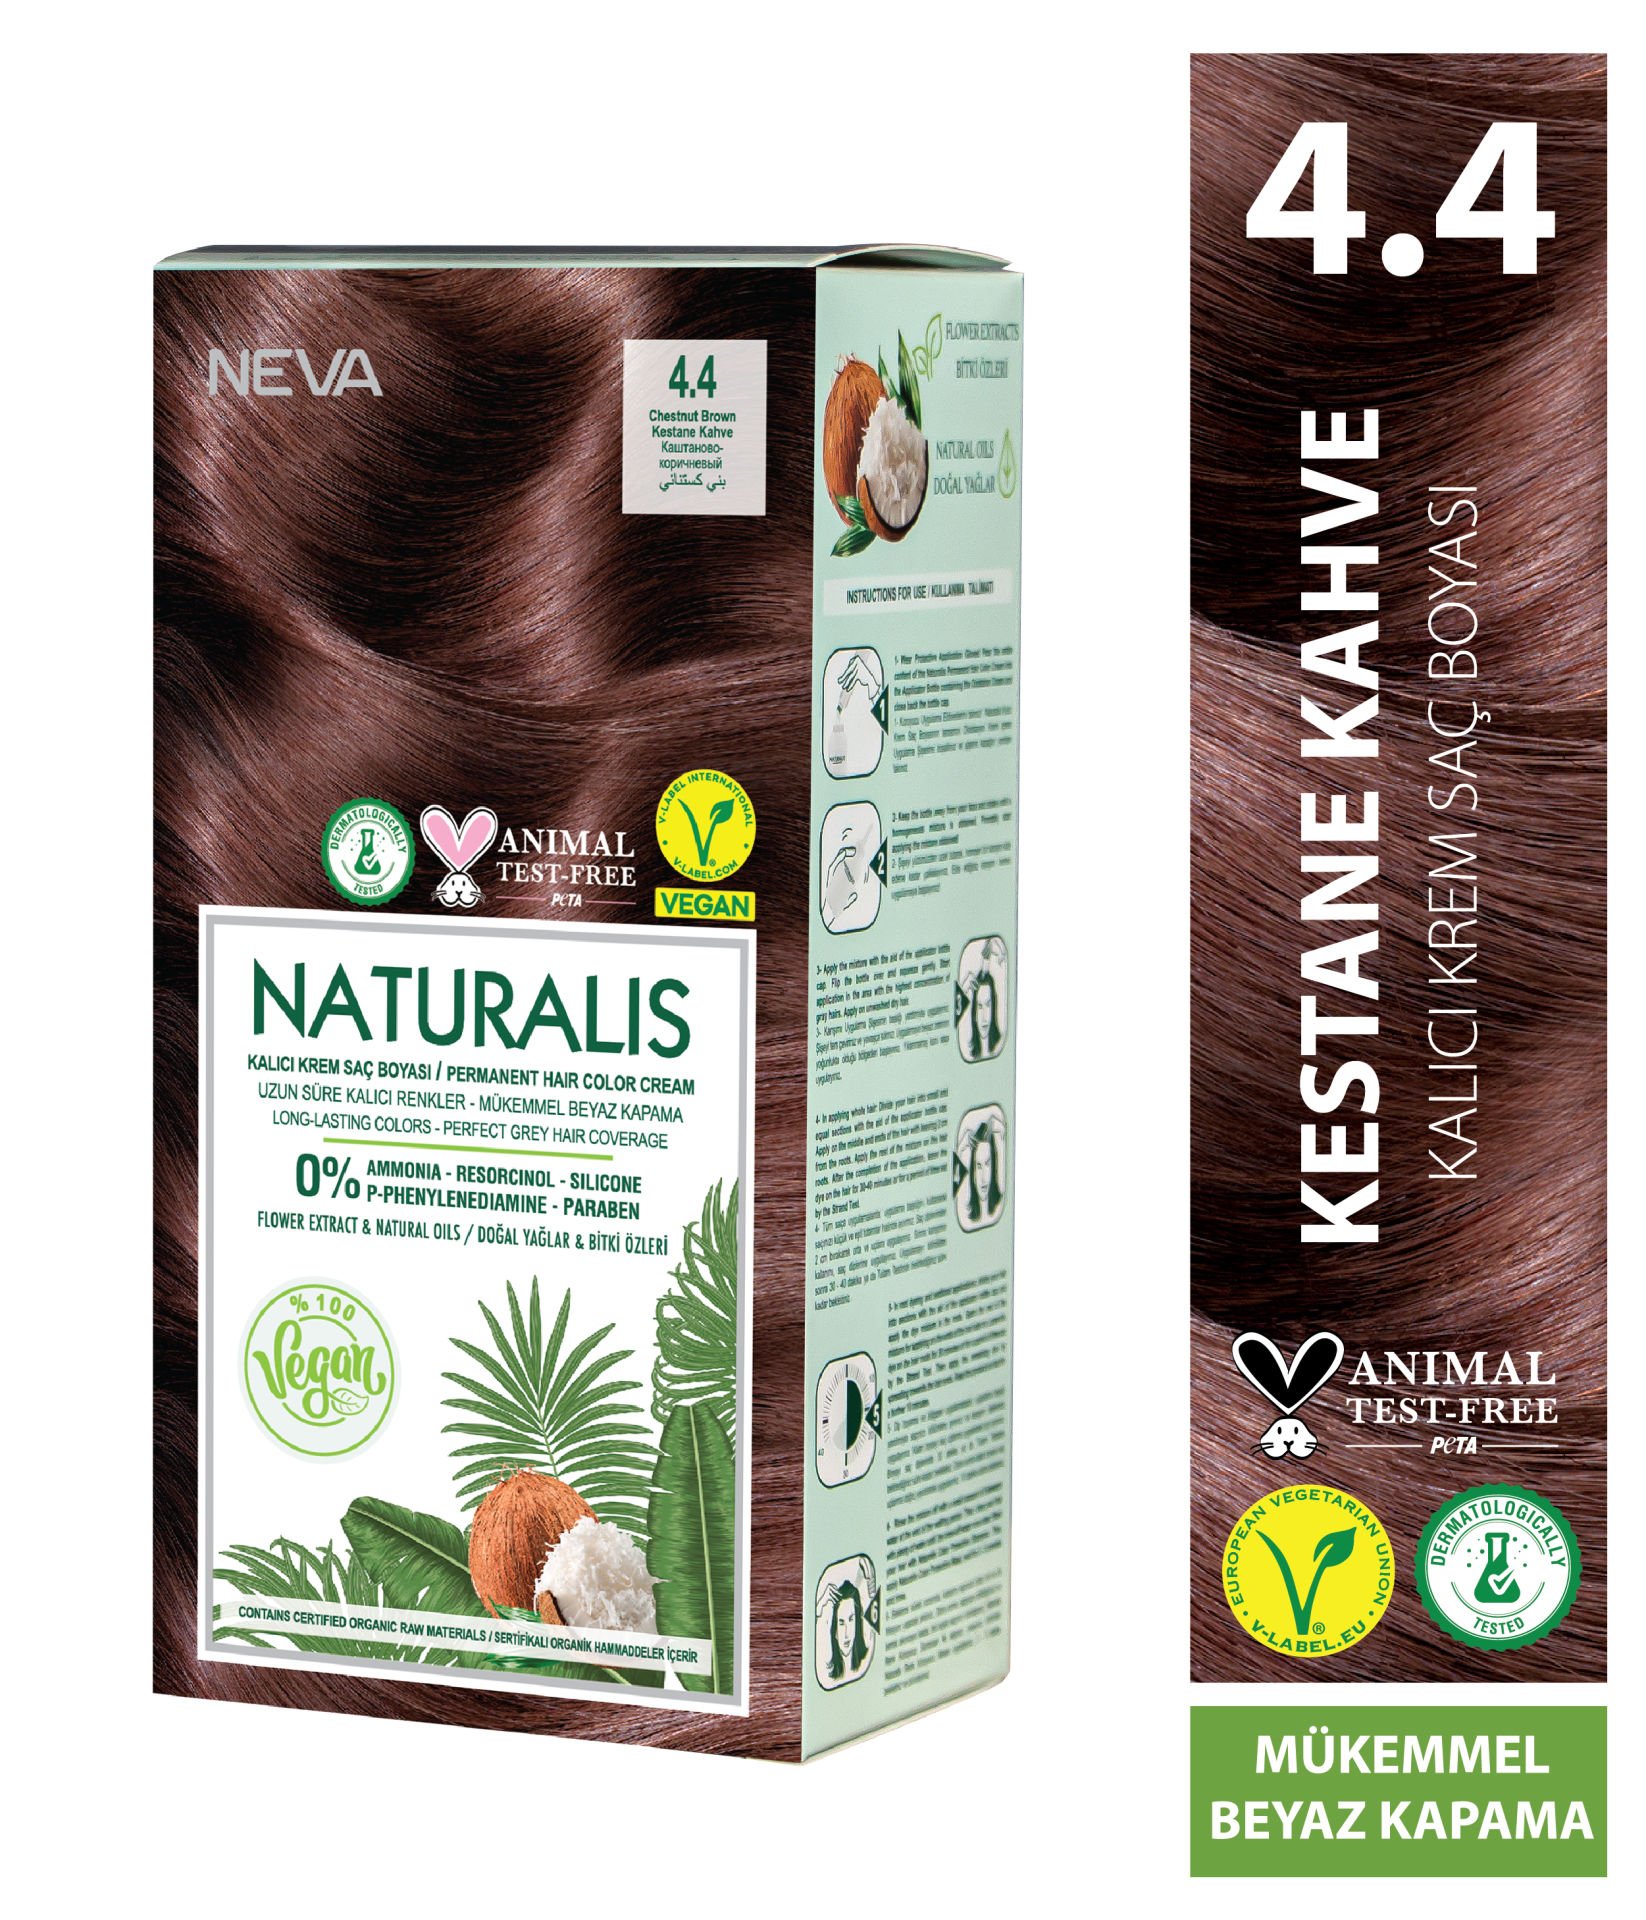 Nevacolor Naturalis Vegan Kestane Kahve 4.4 Kalıcı Krem Saç Boyası Seti